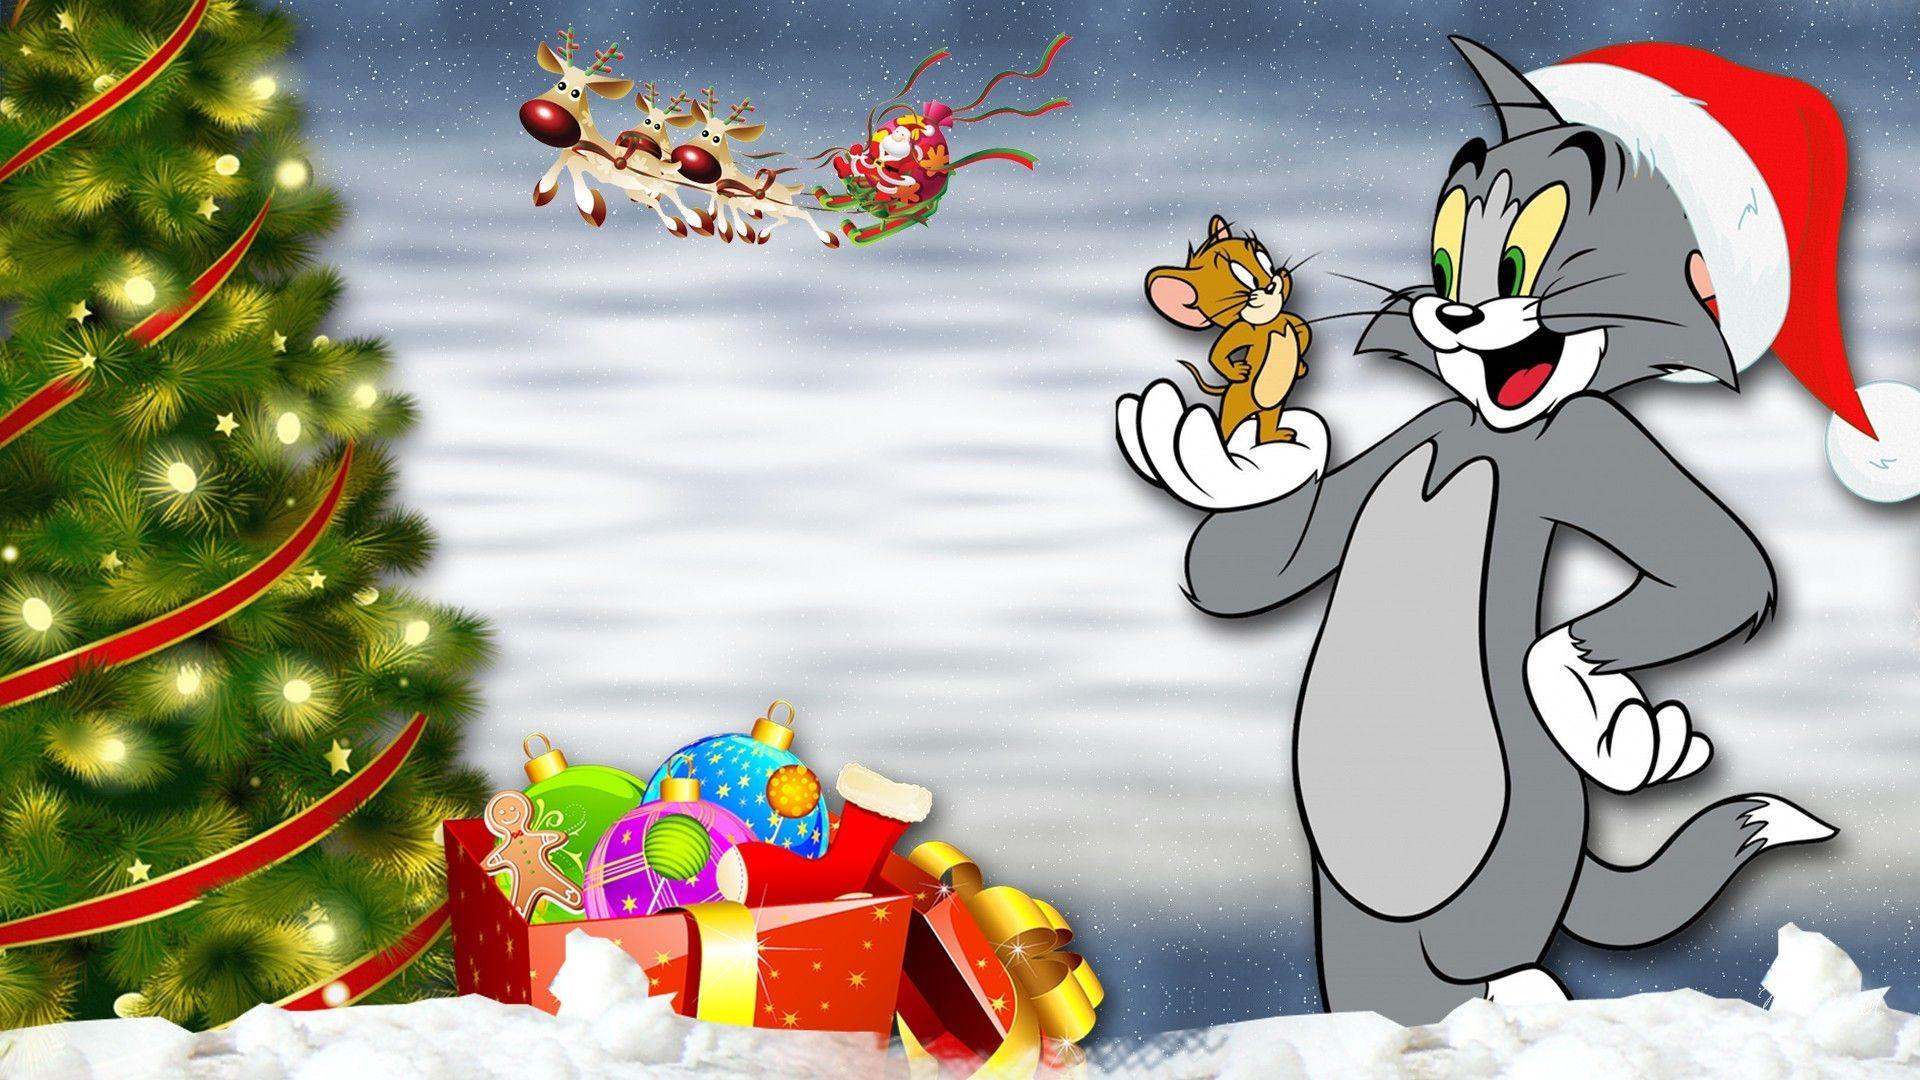 1920x1080 Tom và Jerry đêm Giáng sinh.  Tom và jerry hình nền, Tom